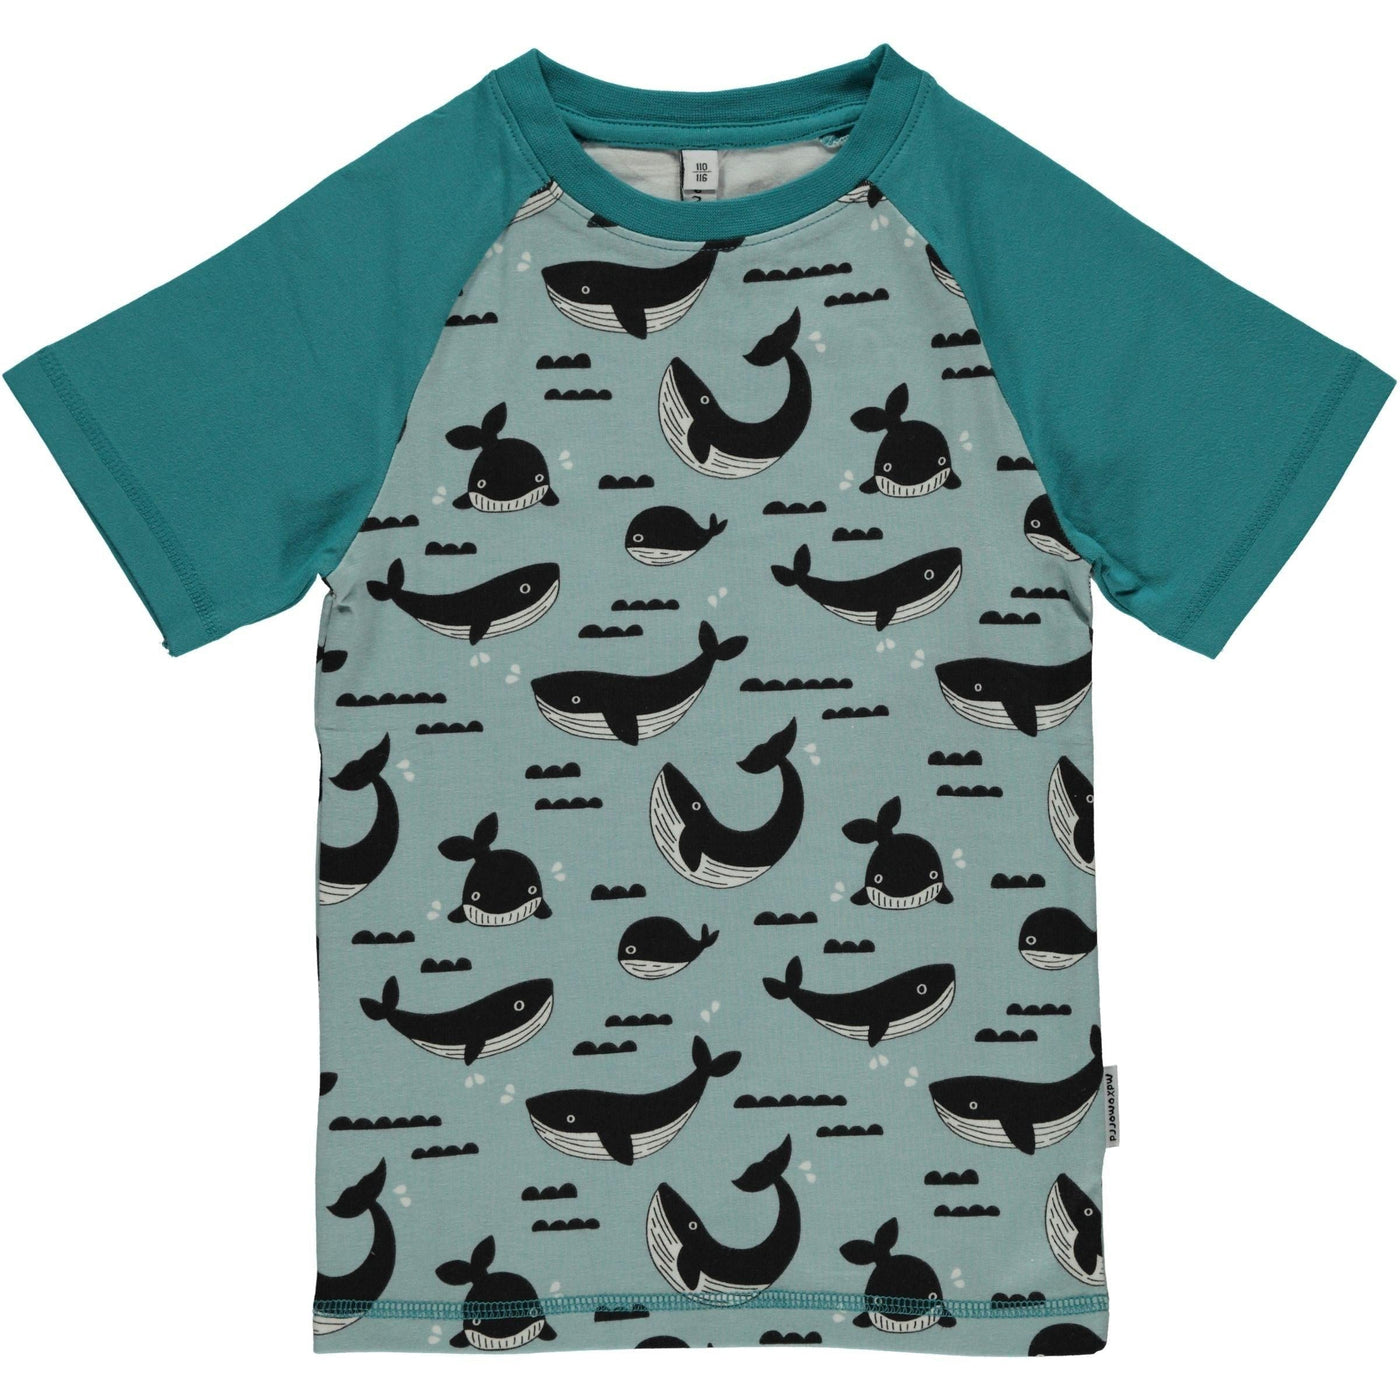 Maxomorra Top Short Sleeves Slim - Whale Ocean